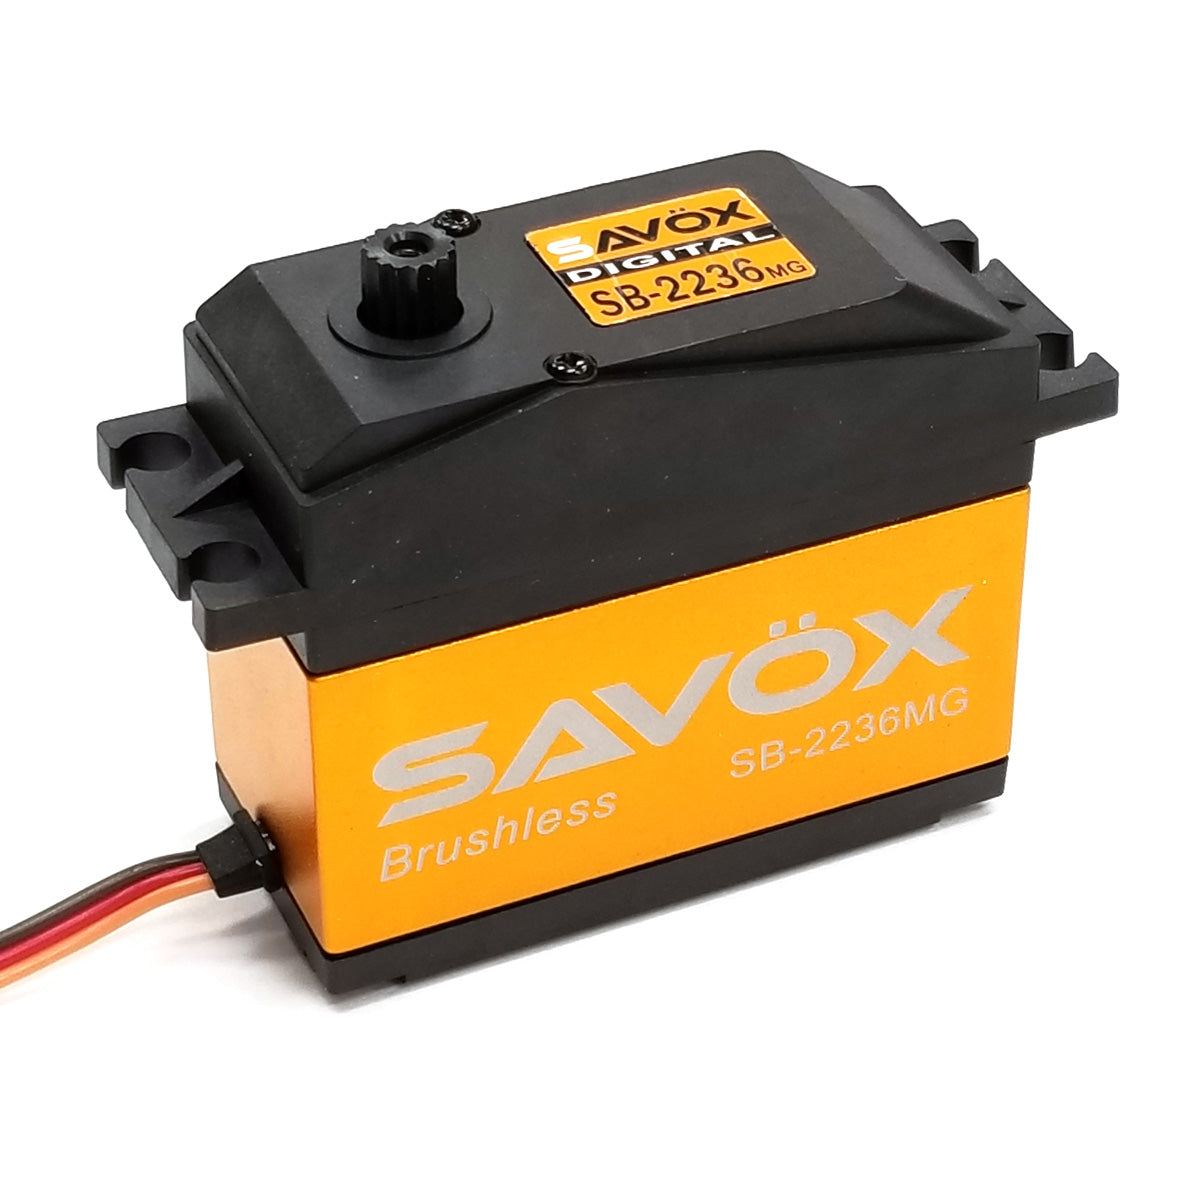 SAVSB2236MG 1/5 Scale, High Voltage, Brushless, Digital Servo .13sec / 555oz @ 7.4V